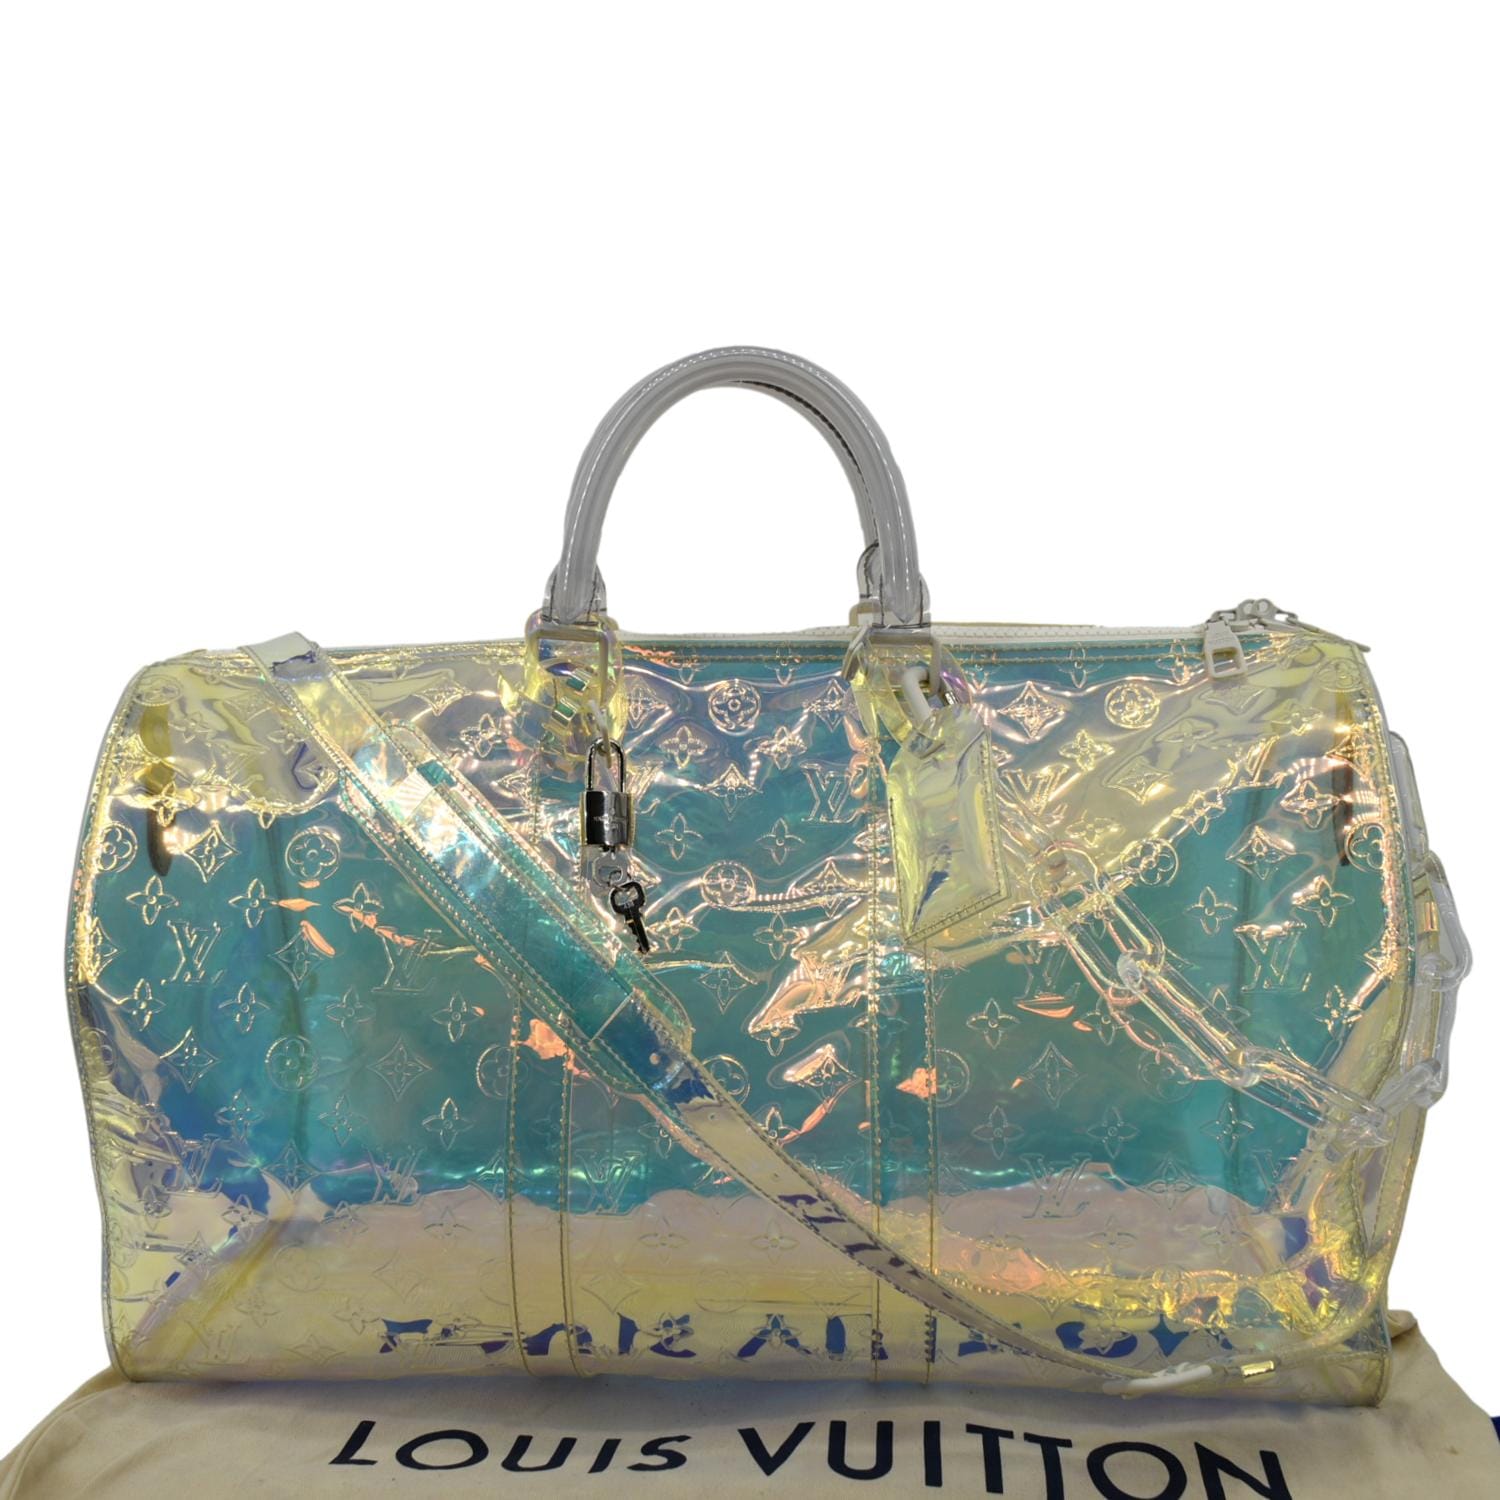 FAKE LOUIS VUITTON Prism Keepall Duffle Bag 